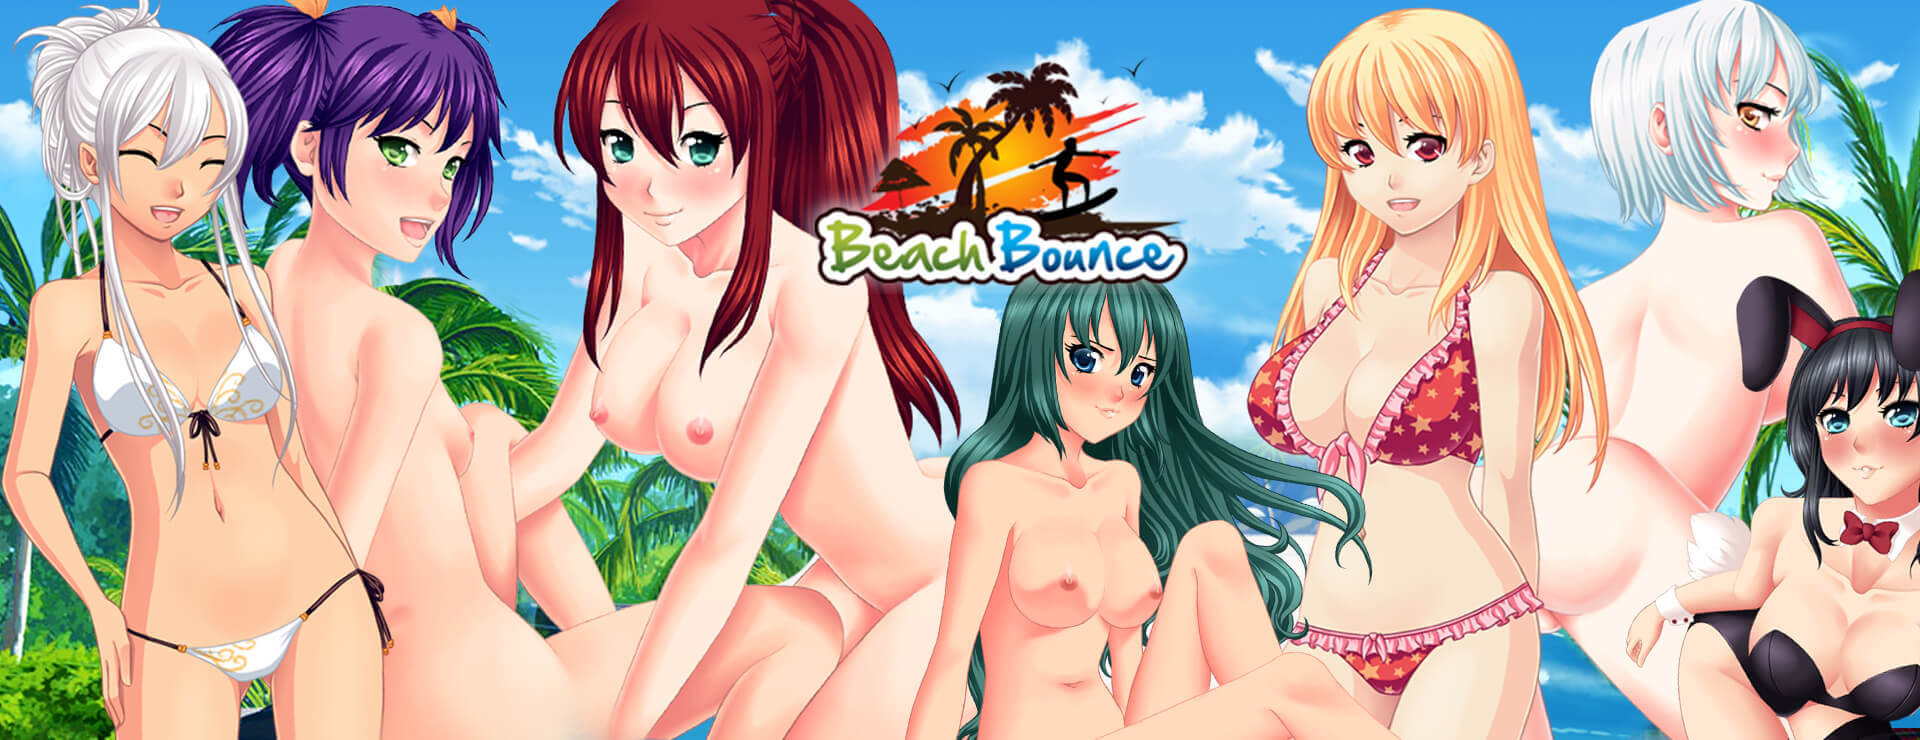 Beach Bounce - Novela Visual Juego